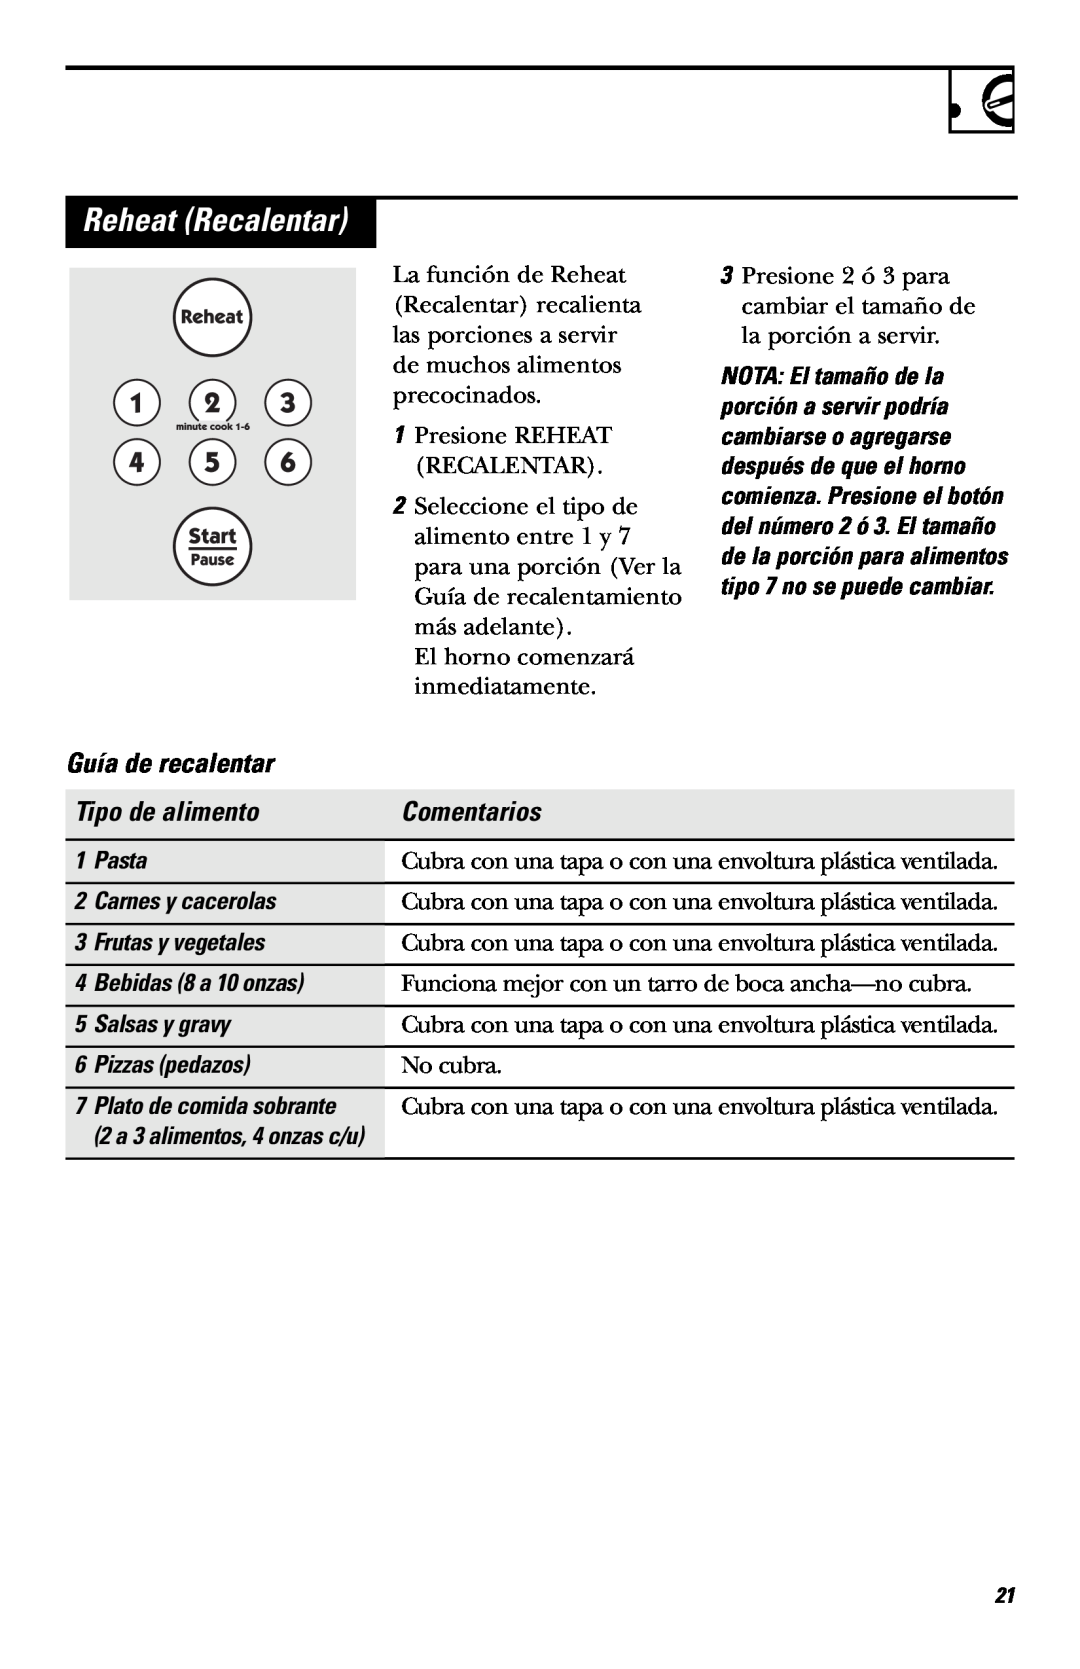 Hotpoint RVM1635 Reheat Recalentar, Guía de recalentar, Tipo de alimento, Comentarios, Pasta, Carnes y cacerolas 